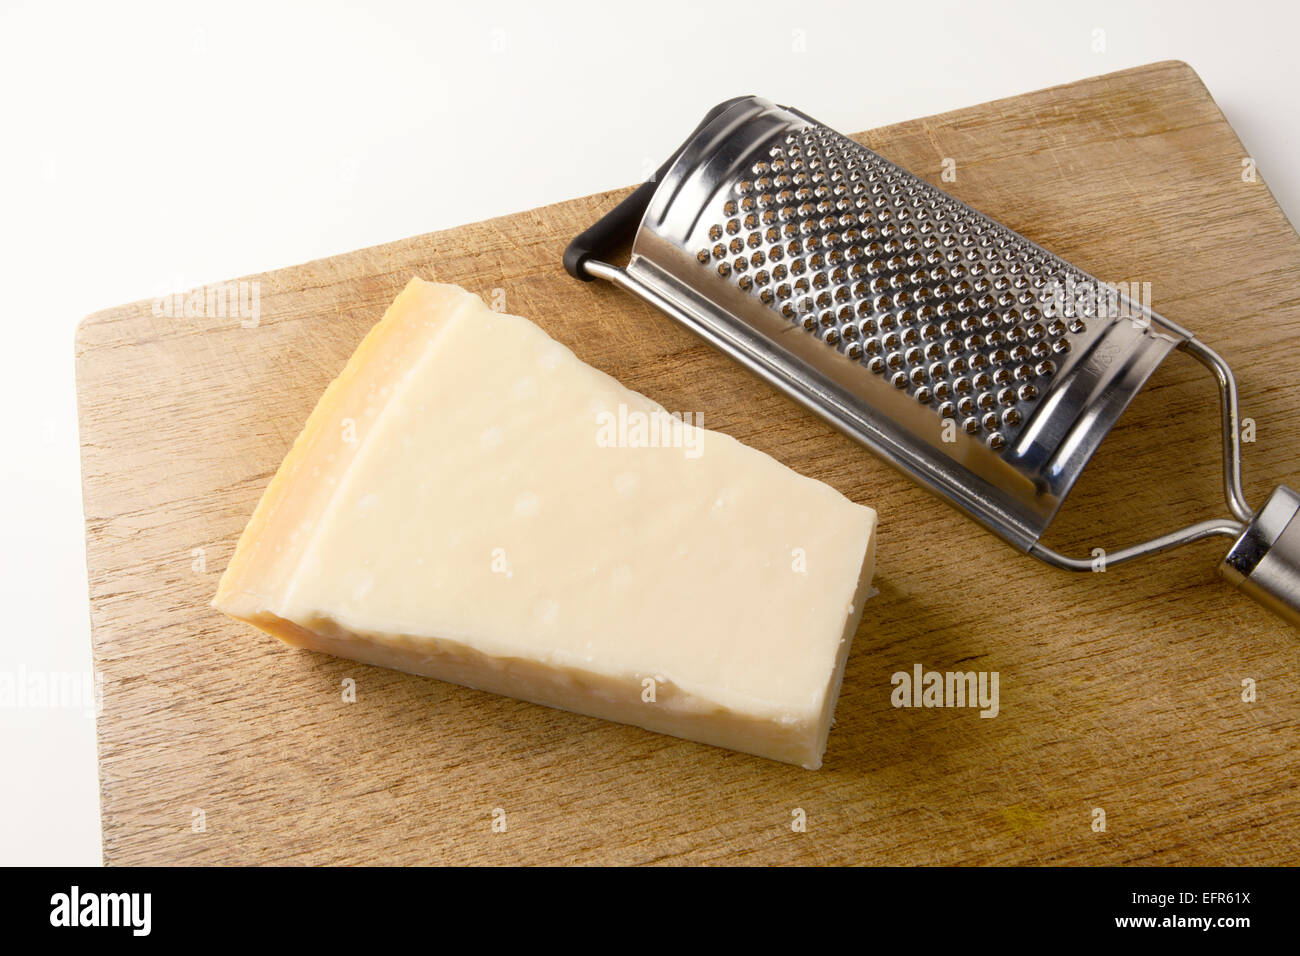 Bloc de fromage Parmesan et une râpe sur une planche à découper en bois Banque D'Images